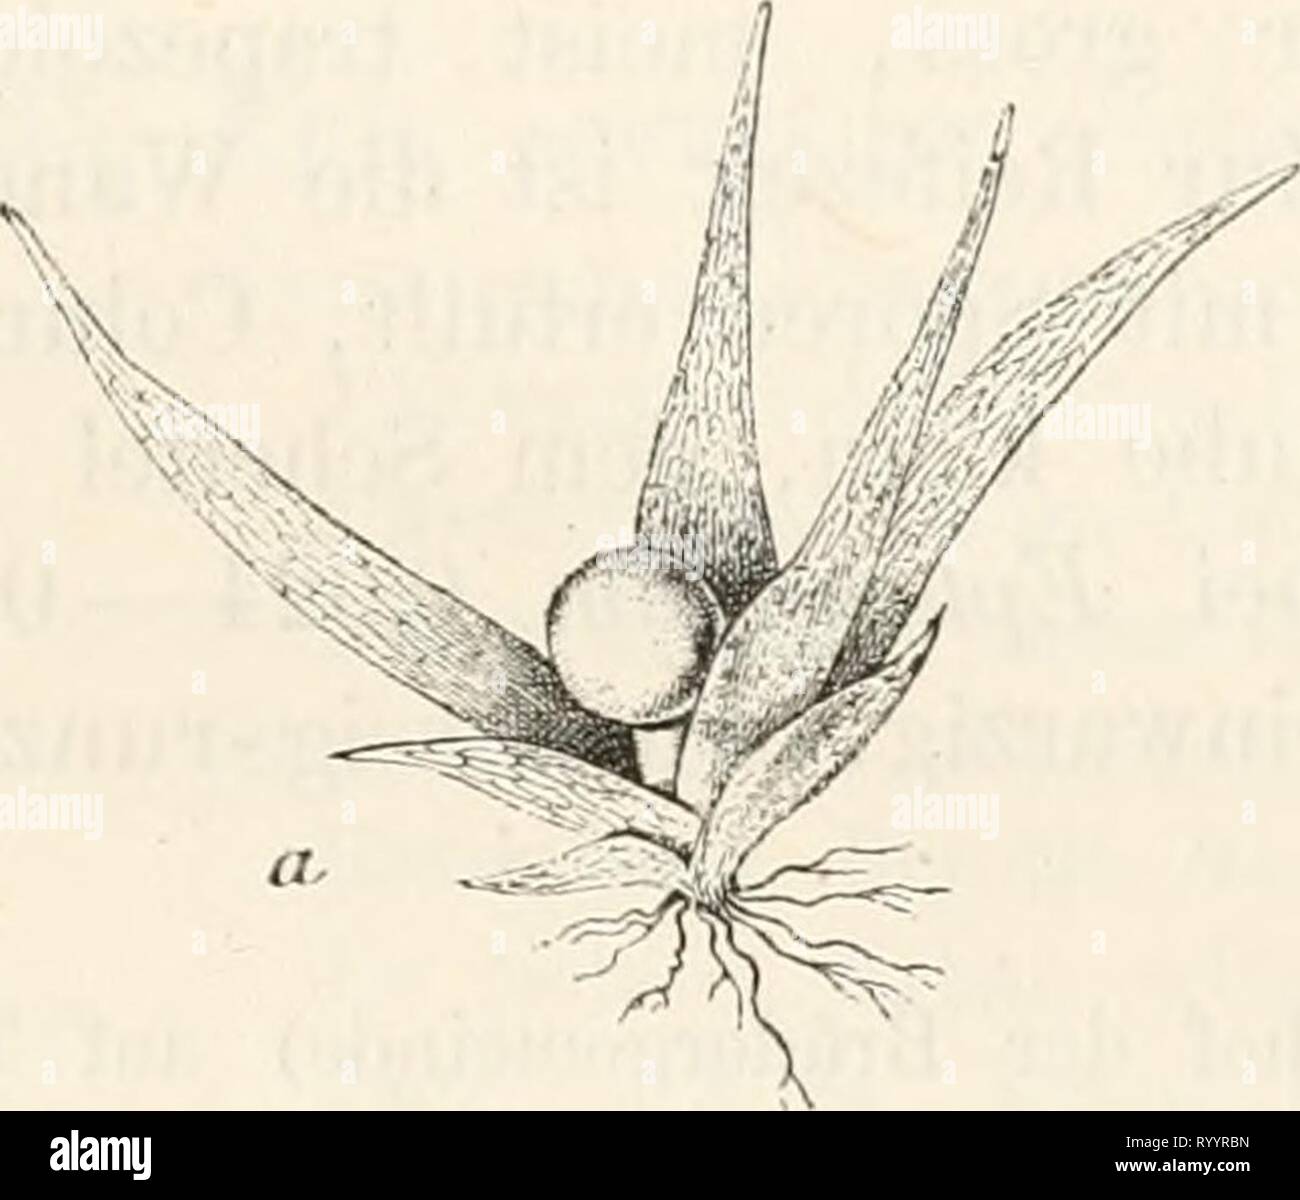 Dr L Rabenhorst's Kryptogamen-Flora von Dr. L. Rabenhorst's Kryptogamen-Flora von Deutschland, Oesterreich und der Schweiz . drlrabenhorstskr0401rabe Year: 1890  1G3 Epheracrum longitblium Philib. Rev. bryol. l&7b, p. 4S. Eplieinerum Philiberti Bescli. Eev. bryol. 1881, p. 48. Sammlungen: Breutel, Muse, frond. exs. No. 136. Einhäusig; die terminal angelegte Antheridiengruppe später direkt unter den $ Hüllblättern; Antheridien zu 3 und 4, farblos, Schlauch oval, etwa 0,07 mm lang, Paraphysen vereinzelt, faden- Fig. 60. Stock Photo